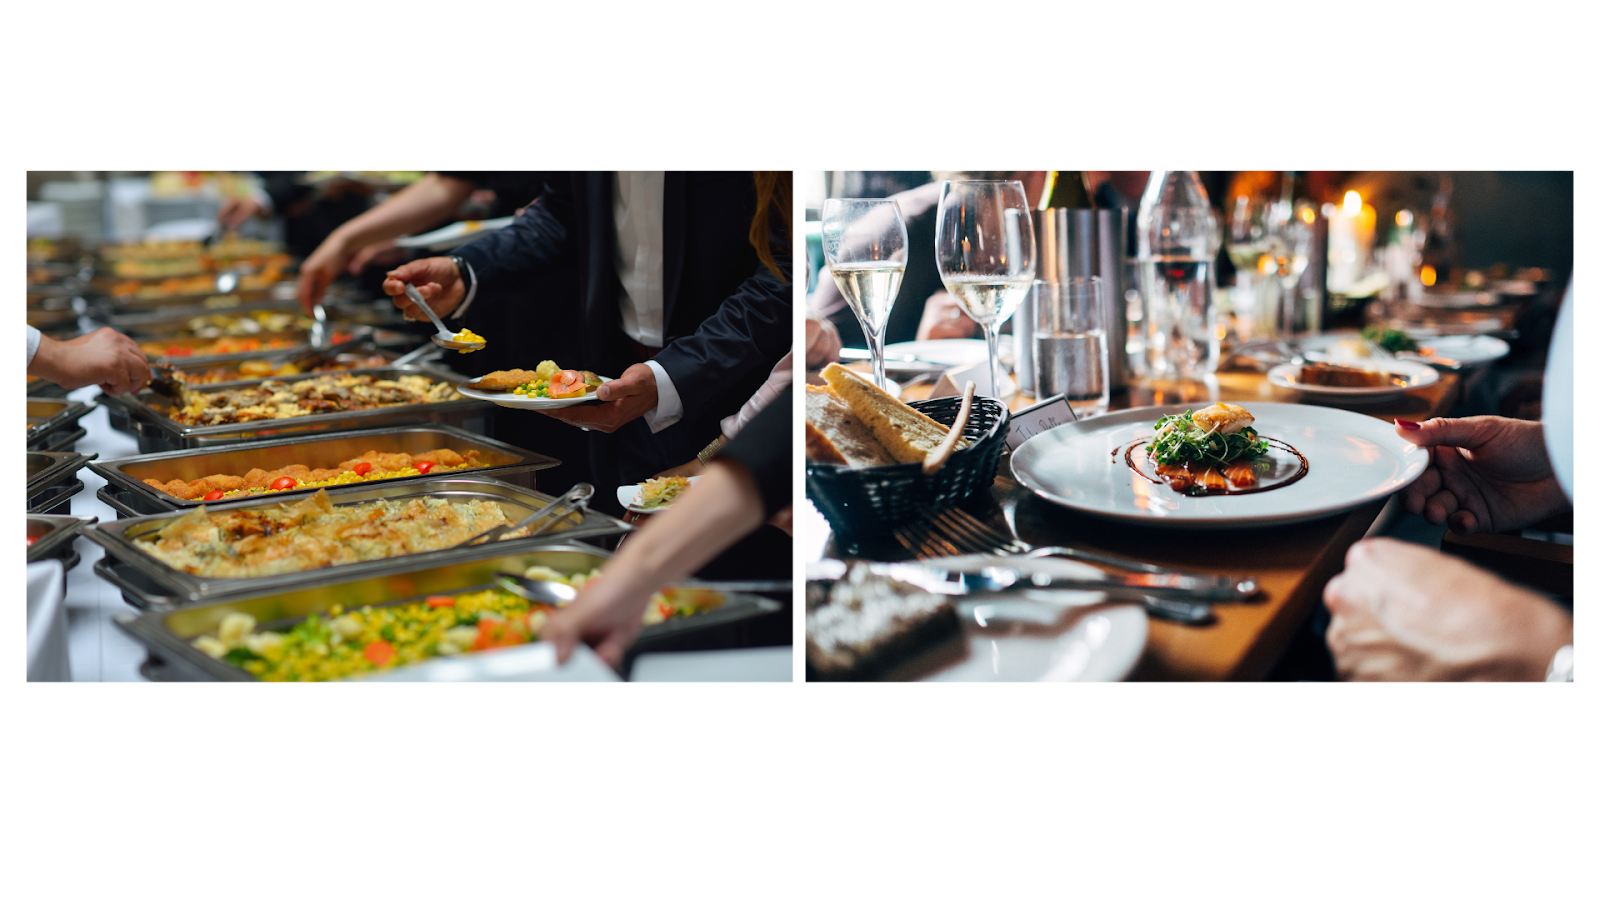 imagem de dois tipos diferentes de serviços em restaurantes, mostrando que o posicionamento pode ser diferente de acordo com o público-alvo escolhido 